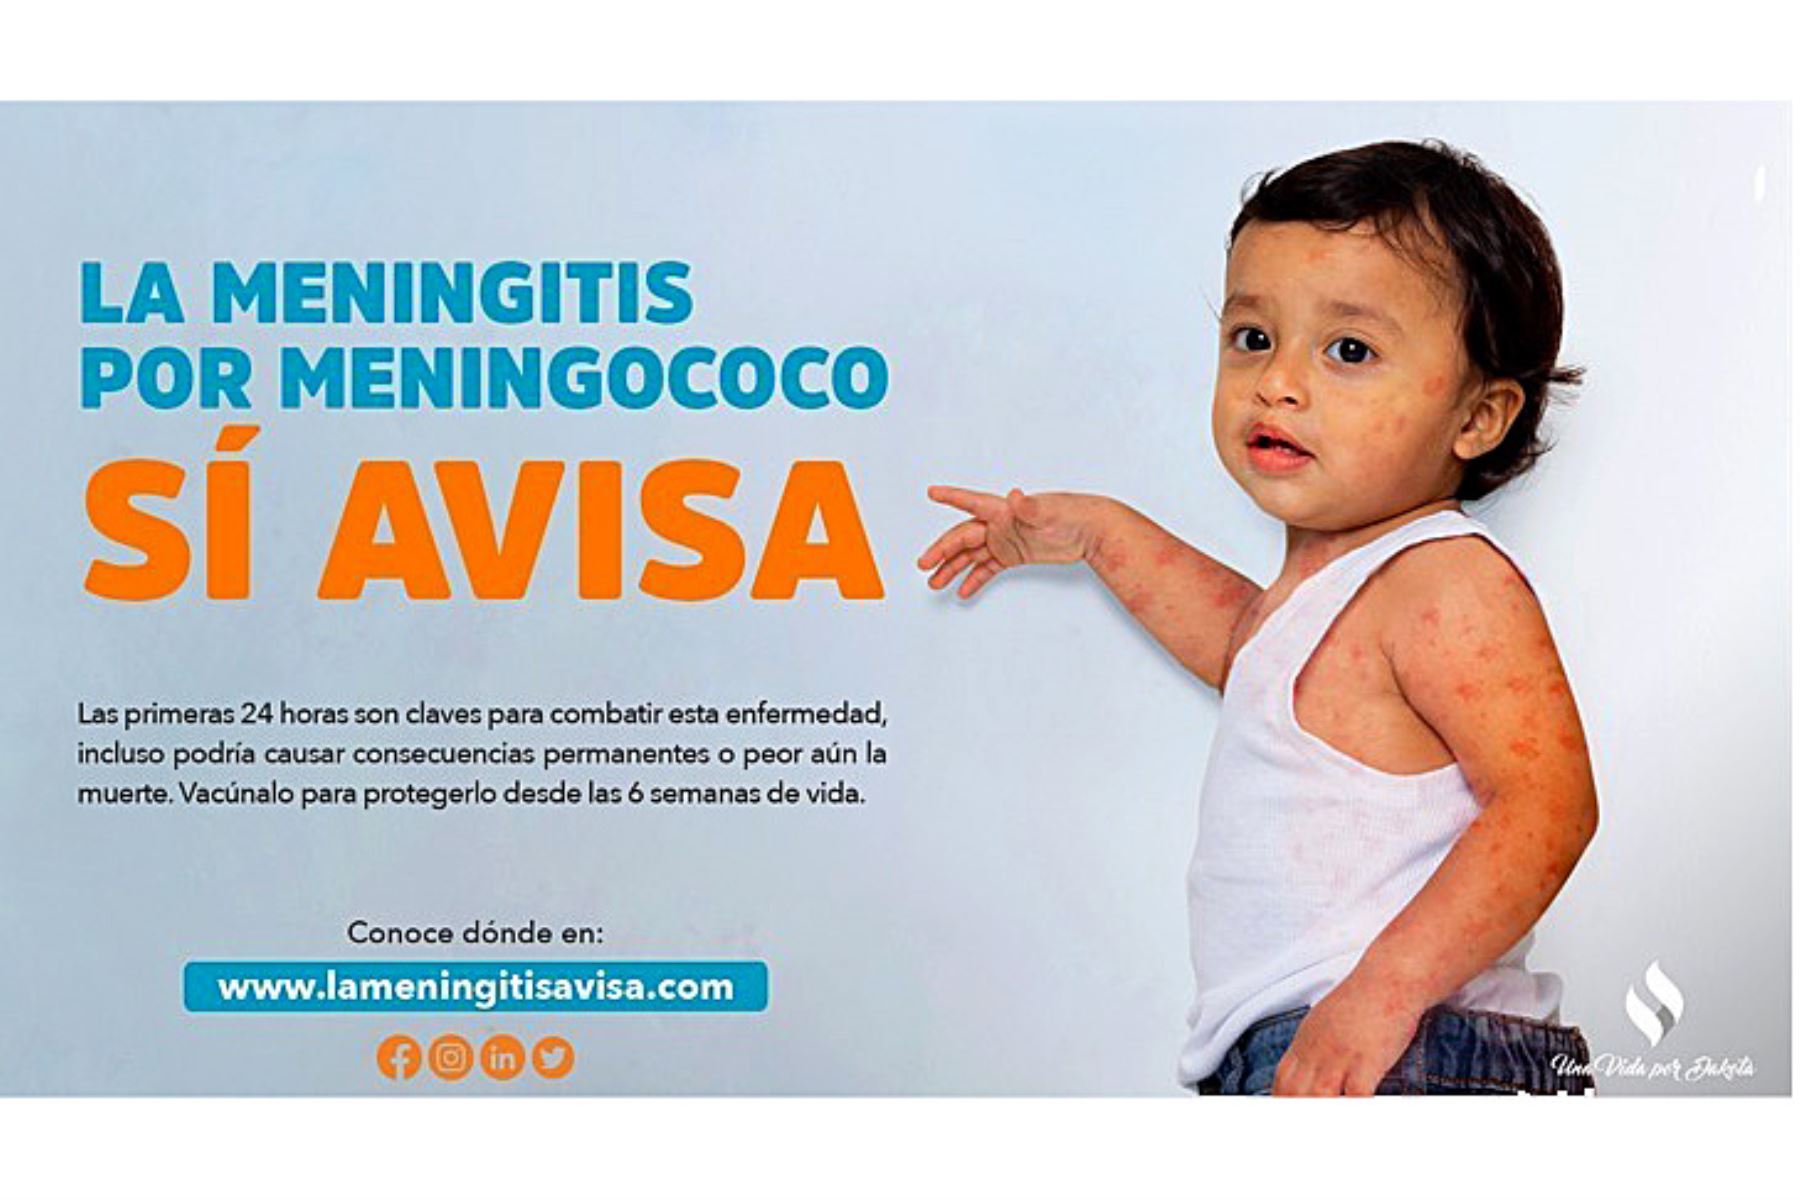 La meningitis sí avisa: se inicia campaña de prevención en todo el Perú [video]